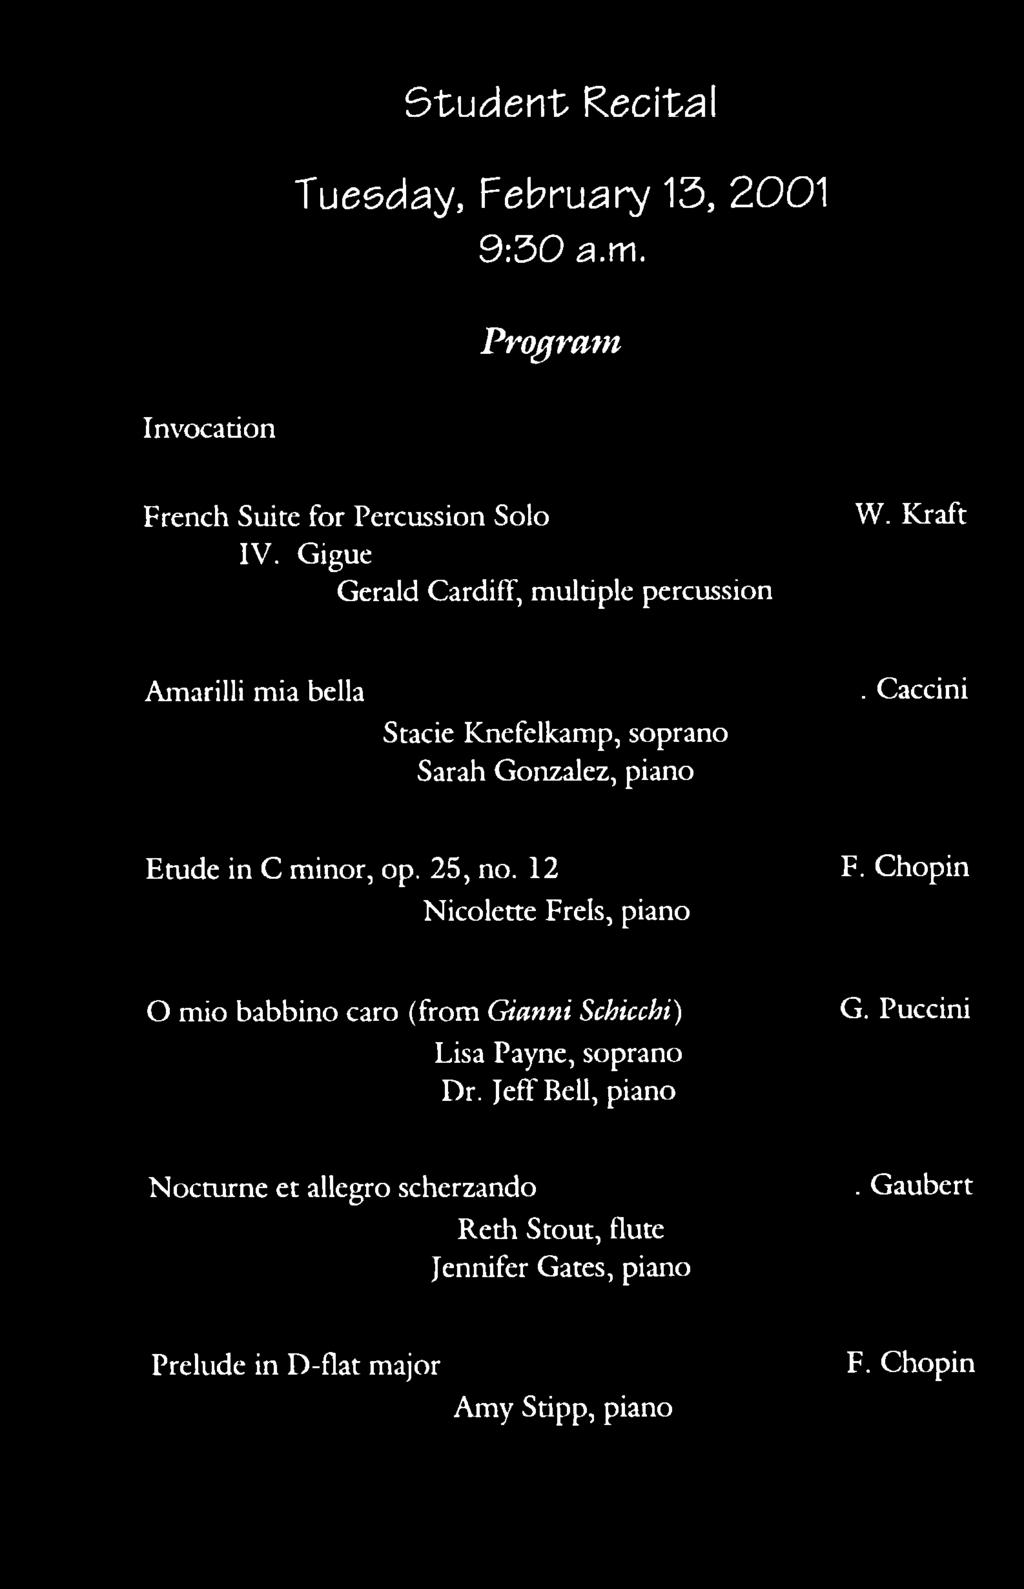 Caccini Etude in C minor, op. 25, no. 12 Nicolette Frels, piano F.